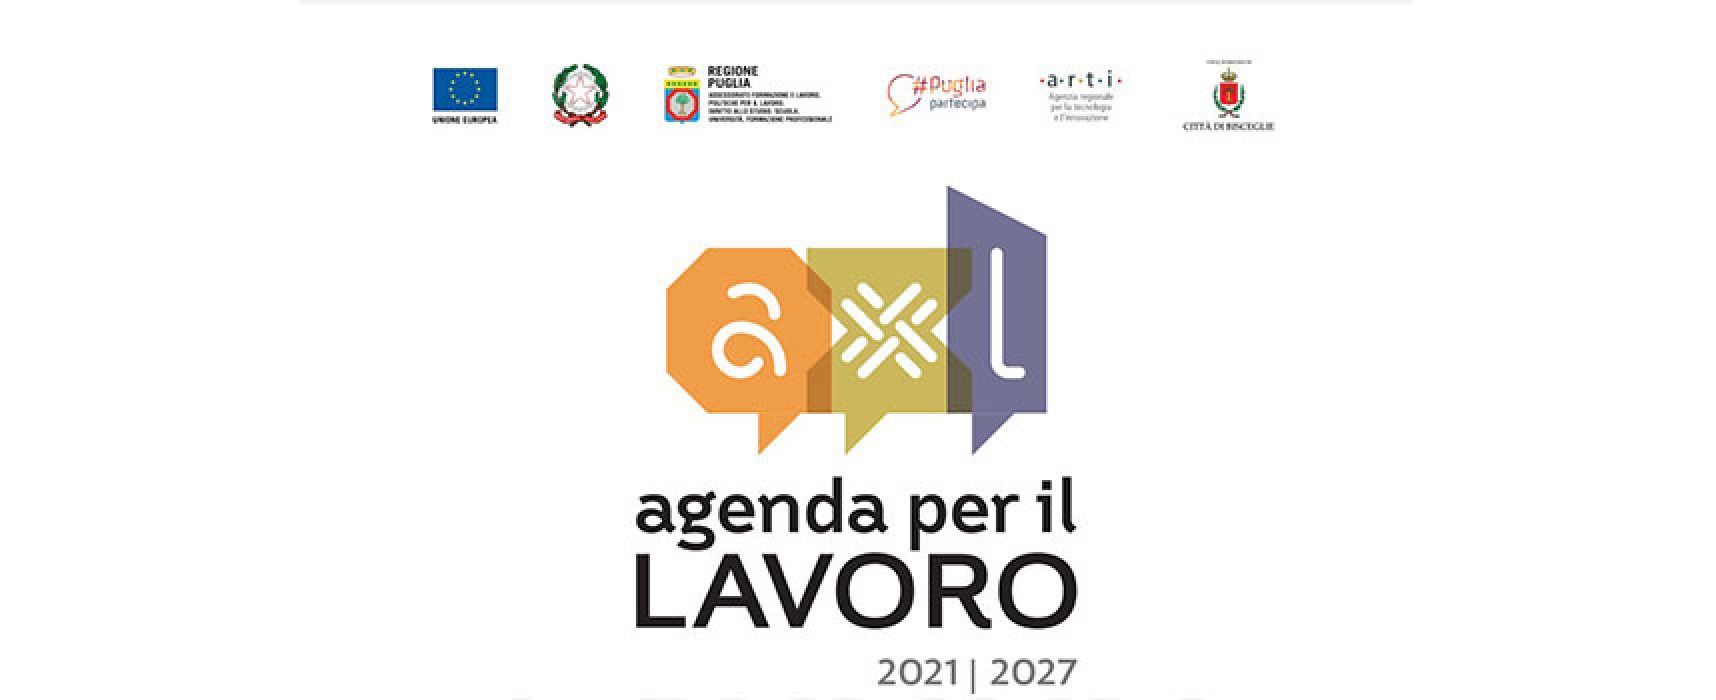 Sophia coworking, a Bisceglie agenda per il lavoro della Regione Puglia 2021/2027